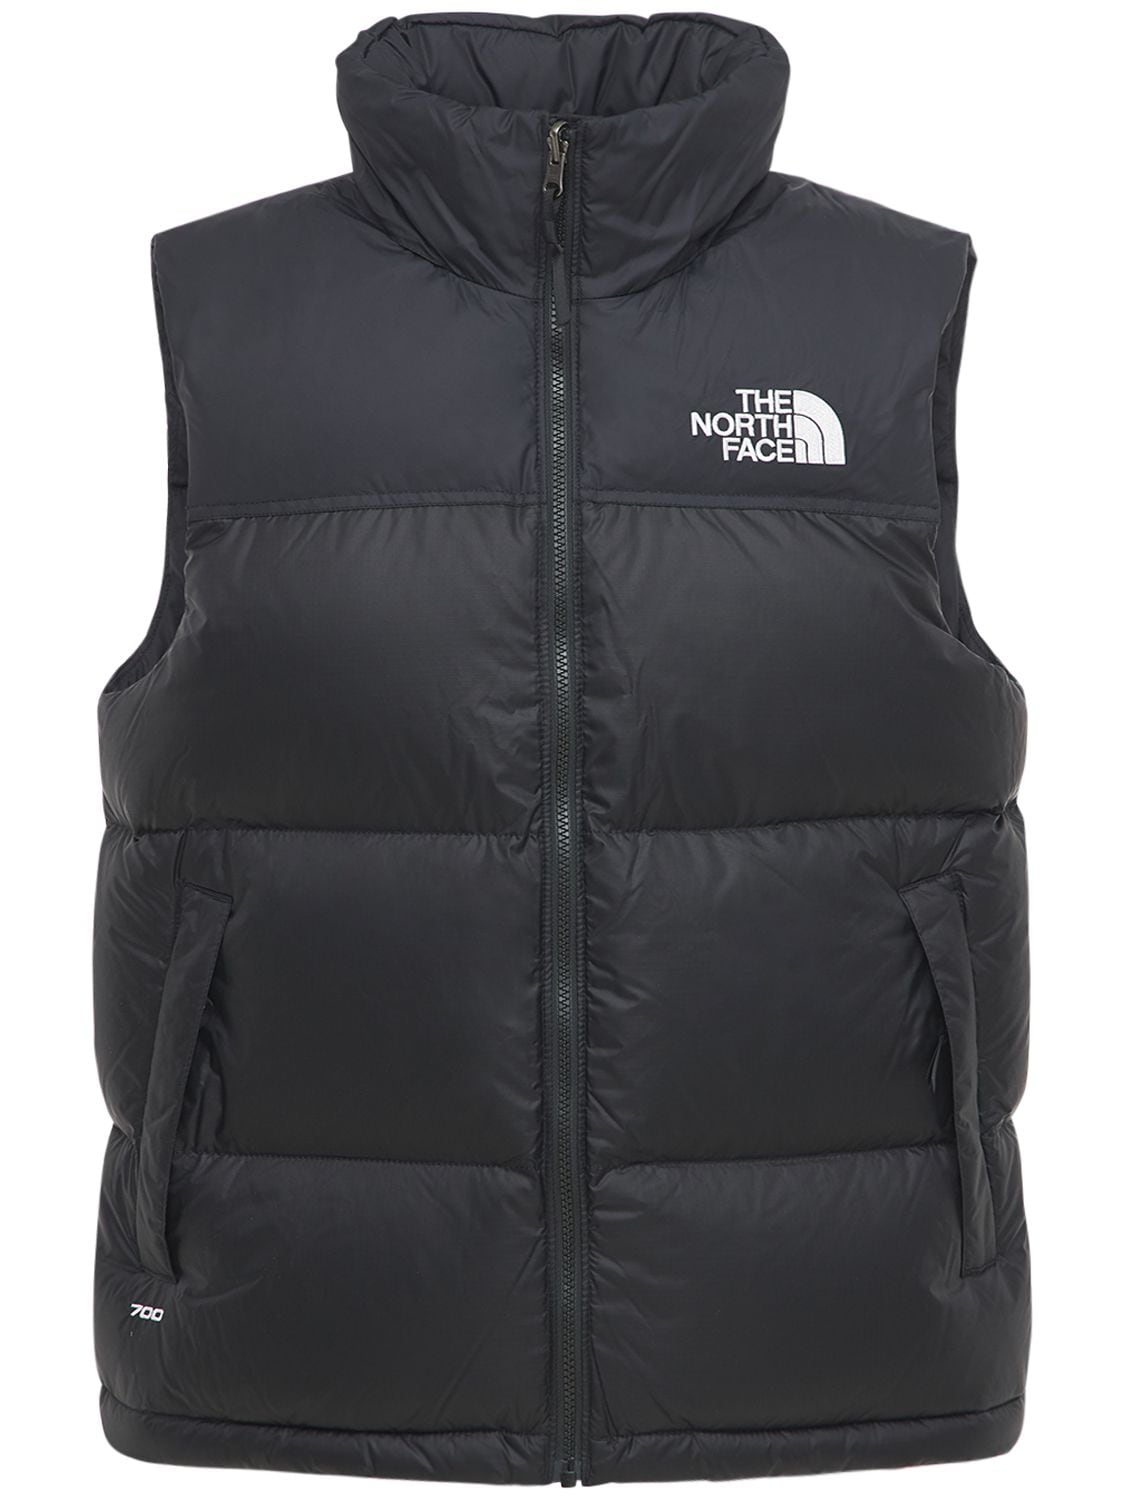 The North Face 1996 Retro Nupste Nylon Down Vest In Black